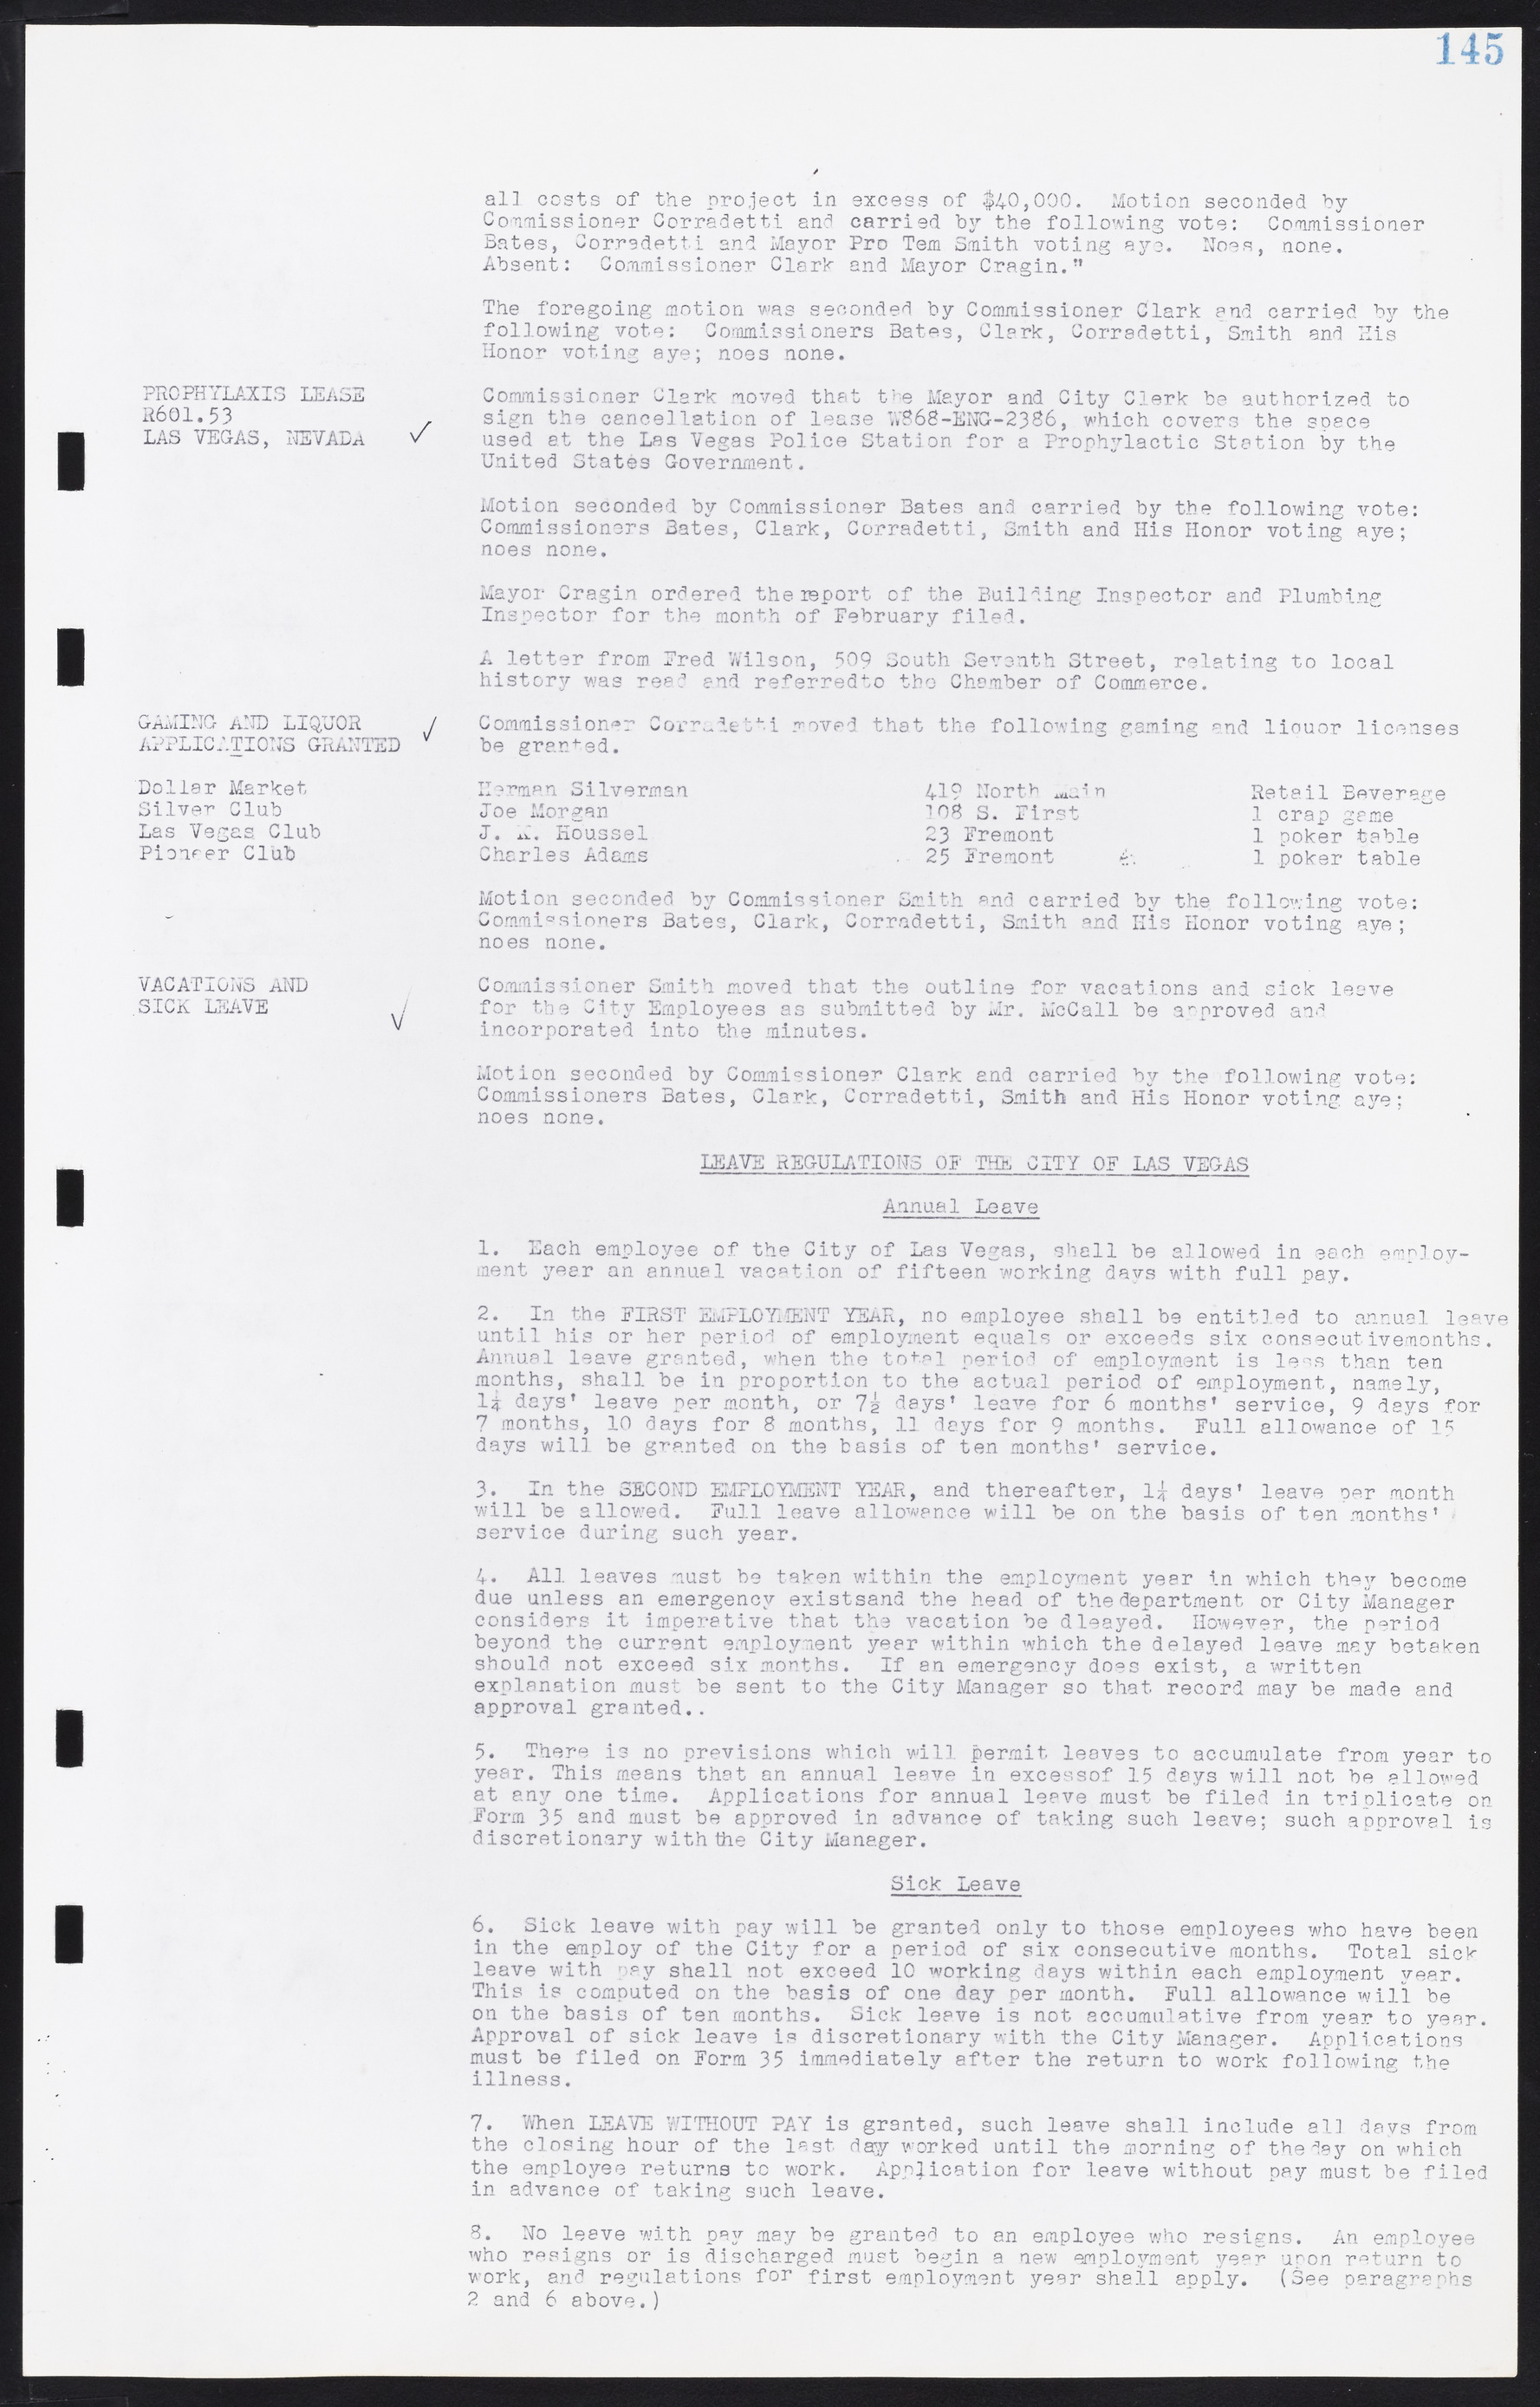 Las Vegas City Commission Minutes, August 11, 1942 to December 30, 1946, lvc000005-162